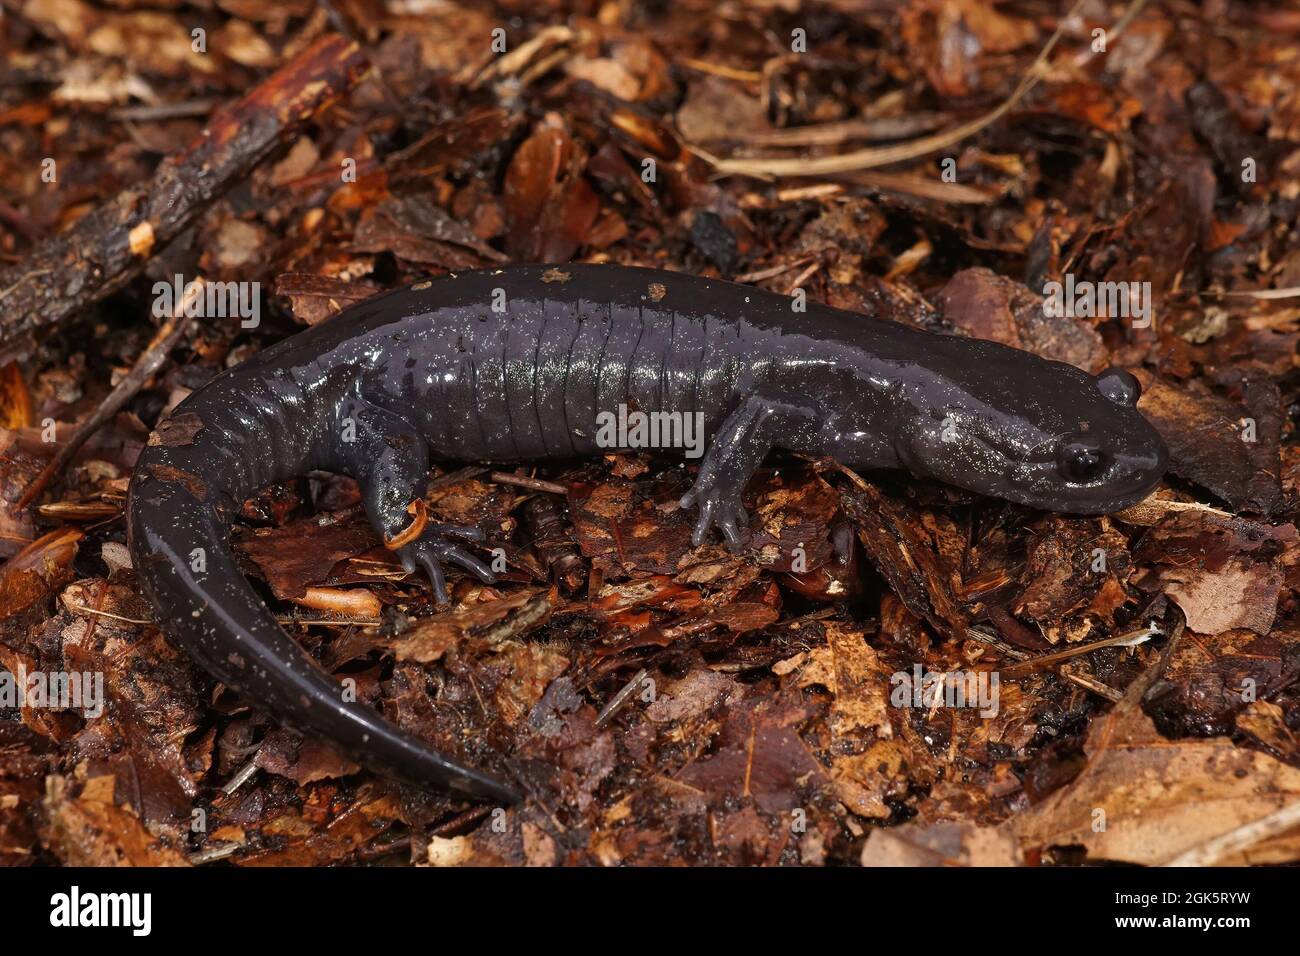 Closeup on a juvenile dark streamtype salamander, Hynobius hirosei Stock Photo